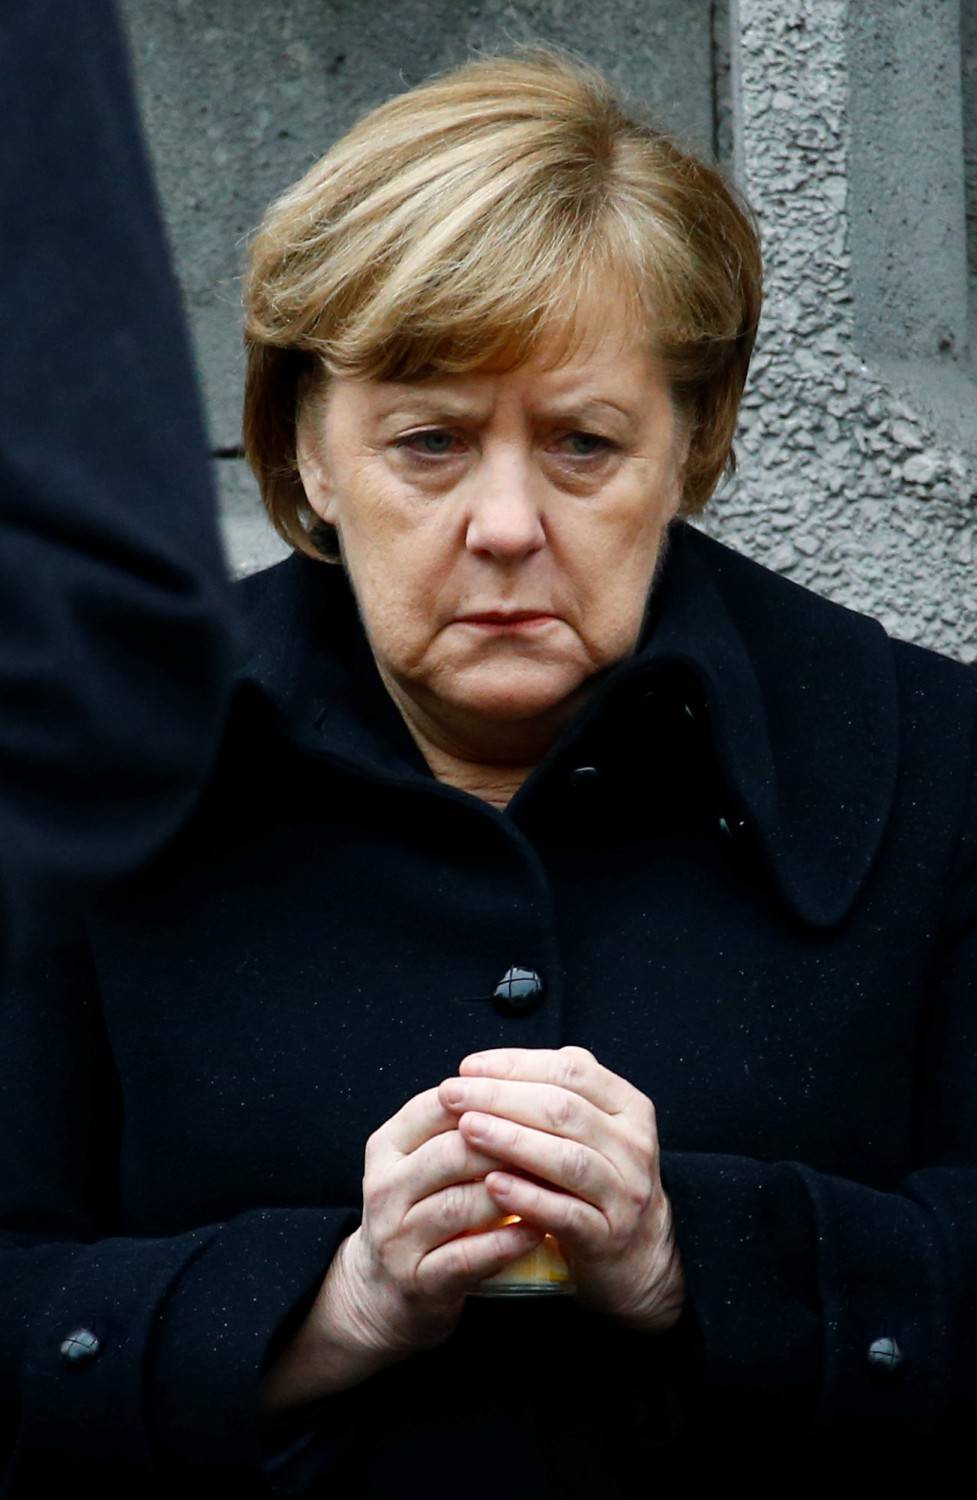 Missione Usa fallita: declino Merkel